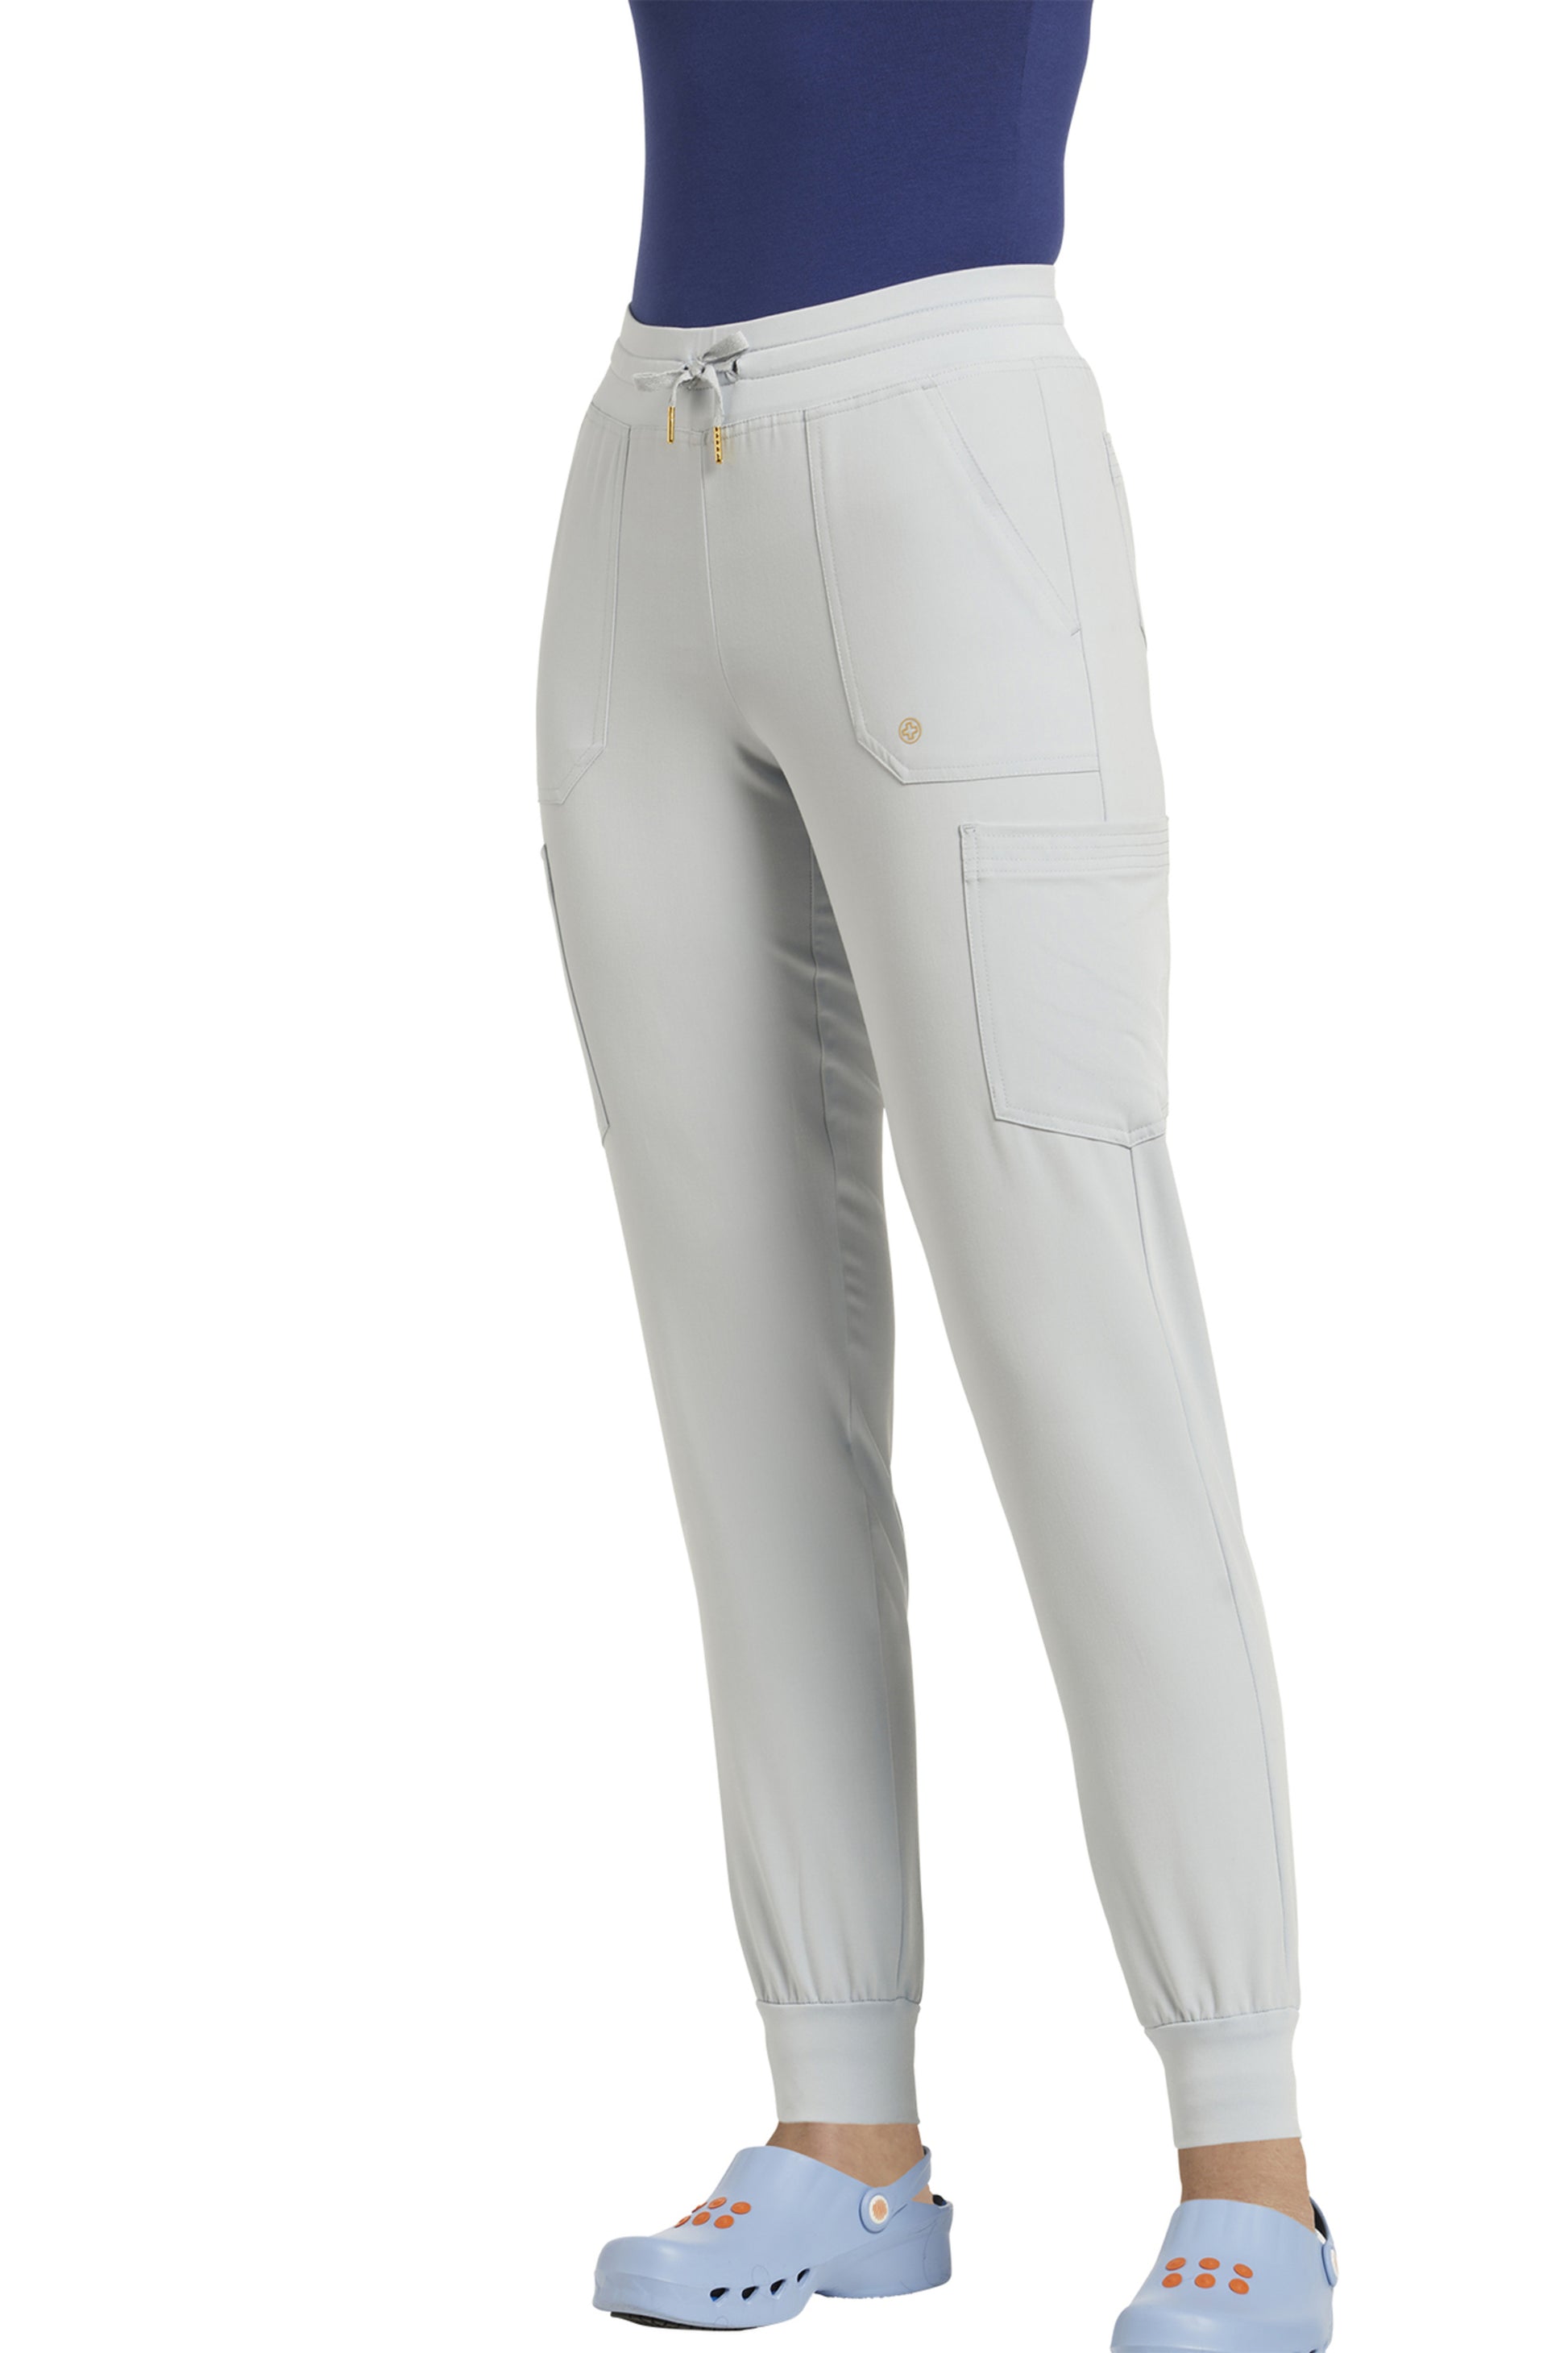 365P White Cross FIT Women's Petite Jogger pants